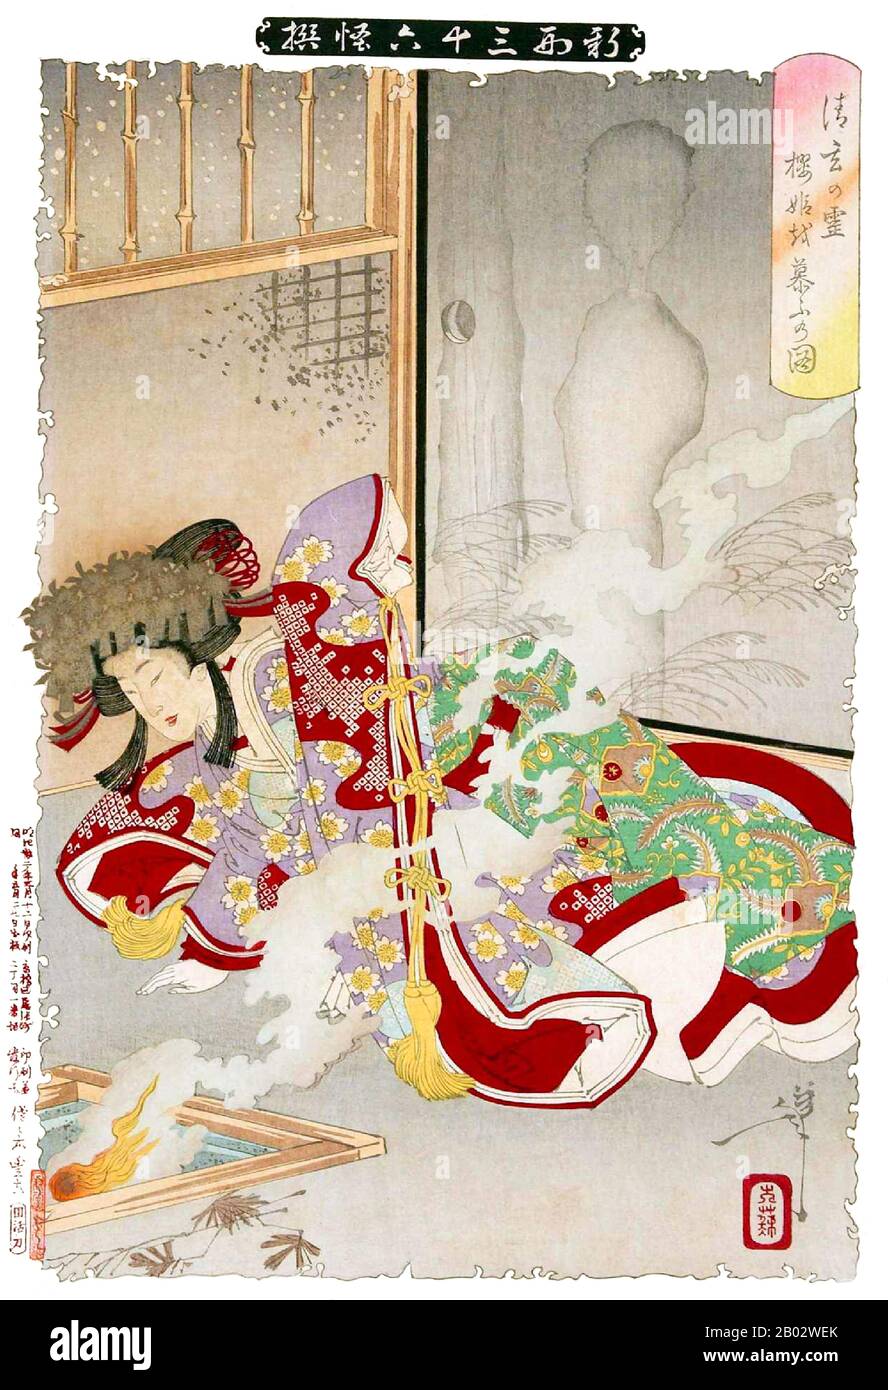 Tsukioka Yoshitoshi (30 avril 1839 – 9 juin 1892) était un artiste japonais et un maître d'impression de boisés Ukiyo-e. Il est largement reconnu comme le dernier grand maître d'Ukiyo-e, un type d'impression japonaise de blocs de bois. Il est en outre considéré comme l'un des plus grands innovateurs de la forme. Sa carrière a duré deux périodes – les dernières années de la période Edo Japon, et les premières années du Japon moderne après la restauration Meiji. Comme beaucoup de Japonais, Yoshitoshi s'intéressait à de nouvelles choses du reste du monde, mais avec le temps, il s'inquiétait de plus en plus de la perte de nombreux aspects du Japon traditionnel Banque D'Images